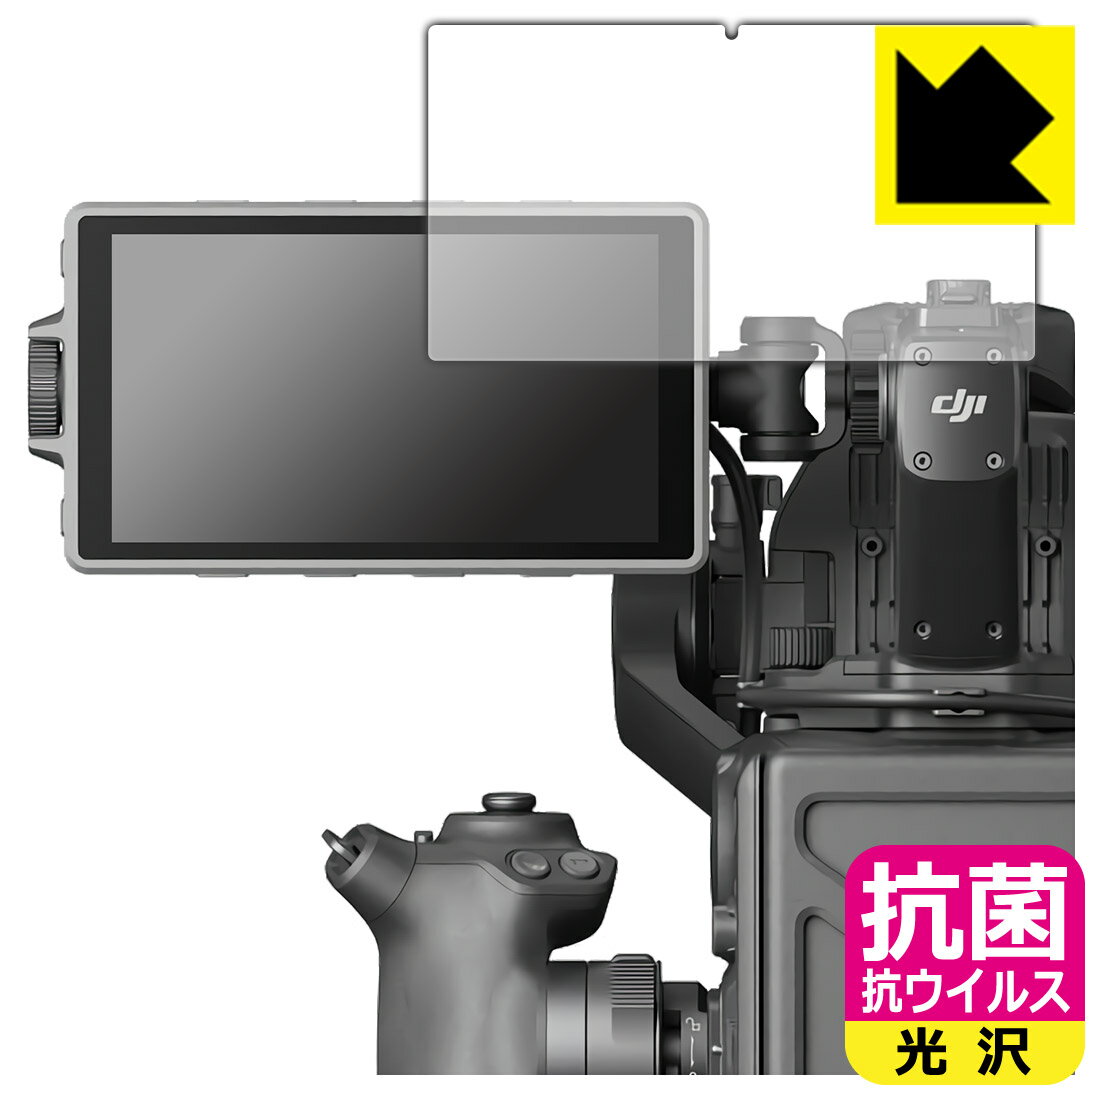 抗菌 抗ウイルス【光沢】保護フィルム DJI Ronin 4D 高輝度メインモニター 日本製 自社製造直販